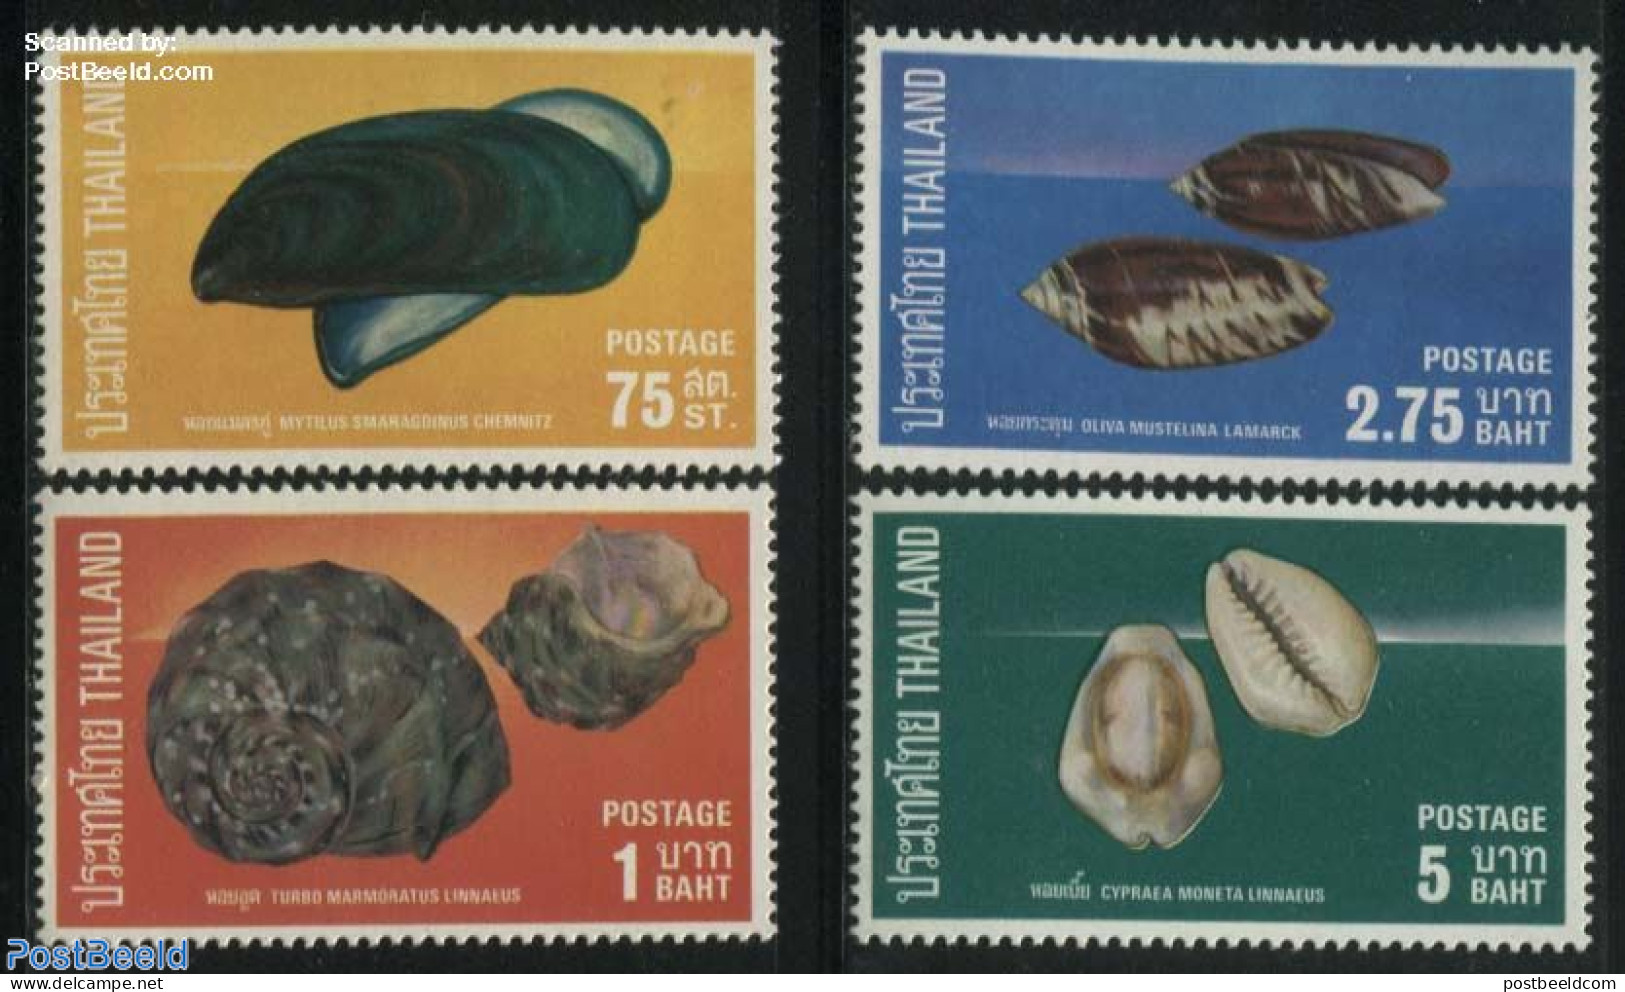 Thailand 1975 Shells 4v, Mint NH, Nature - Shells & Crustaceans - Marine Life